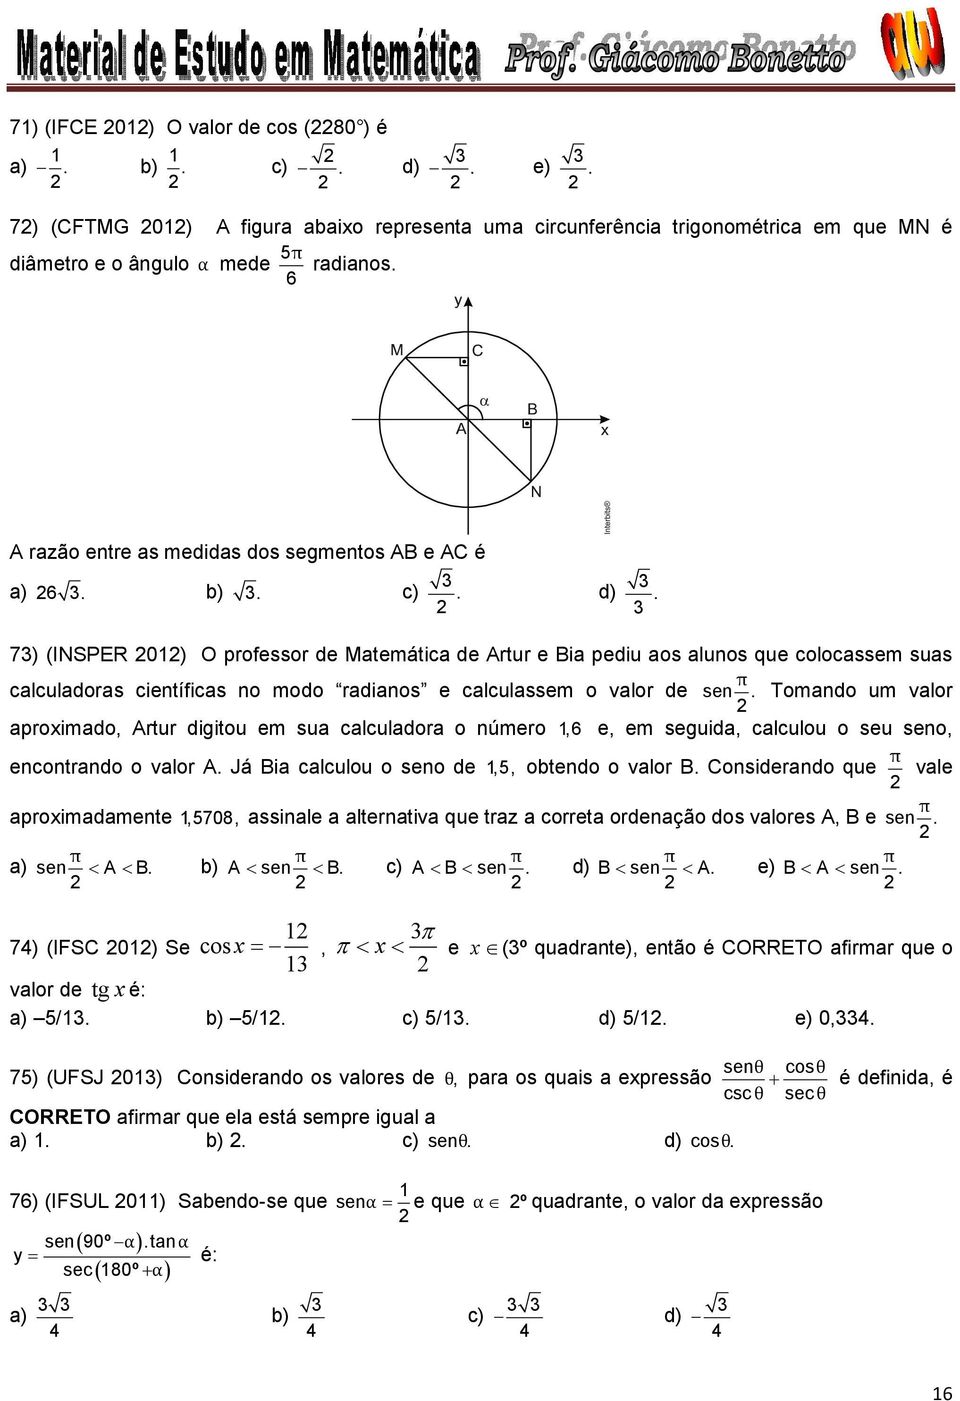 7) (INSPER 0) O prfessr de Matemática de Artur e Bia pediu as aluns que clcassem suas π calculadras científicas n md radians e calculassem valr de sen.